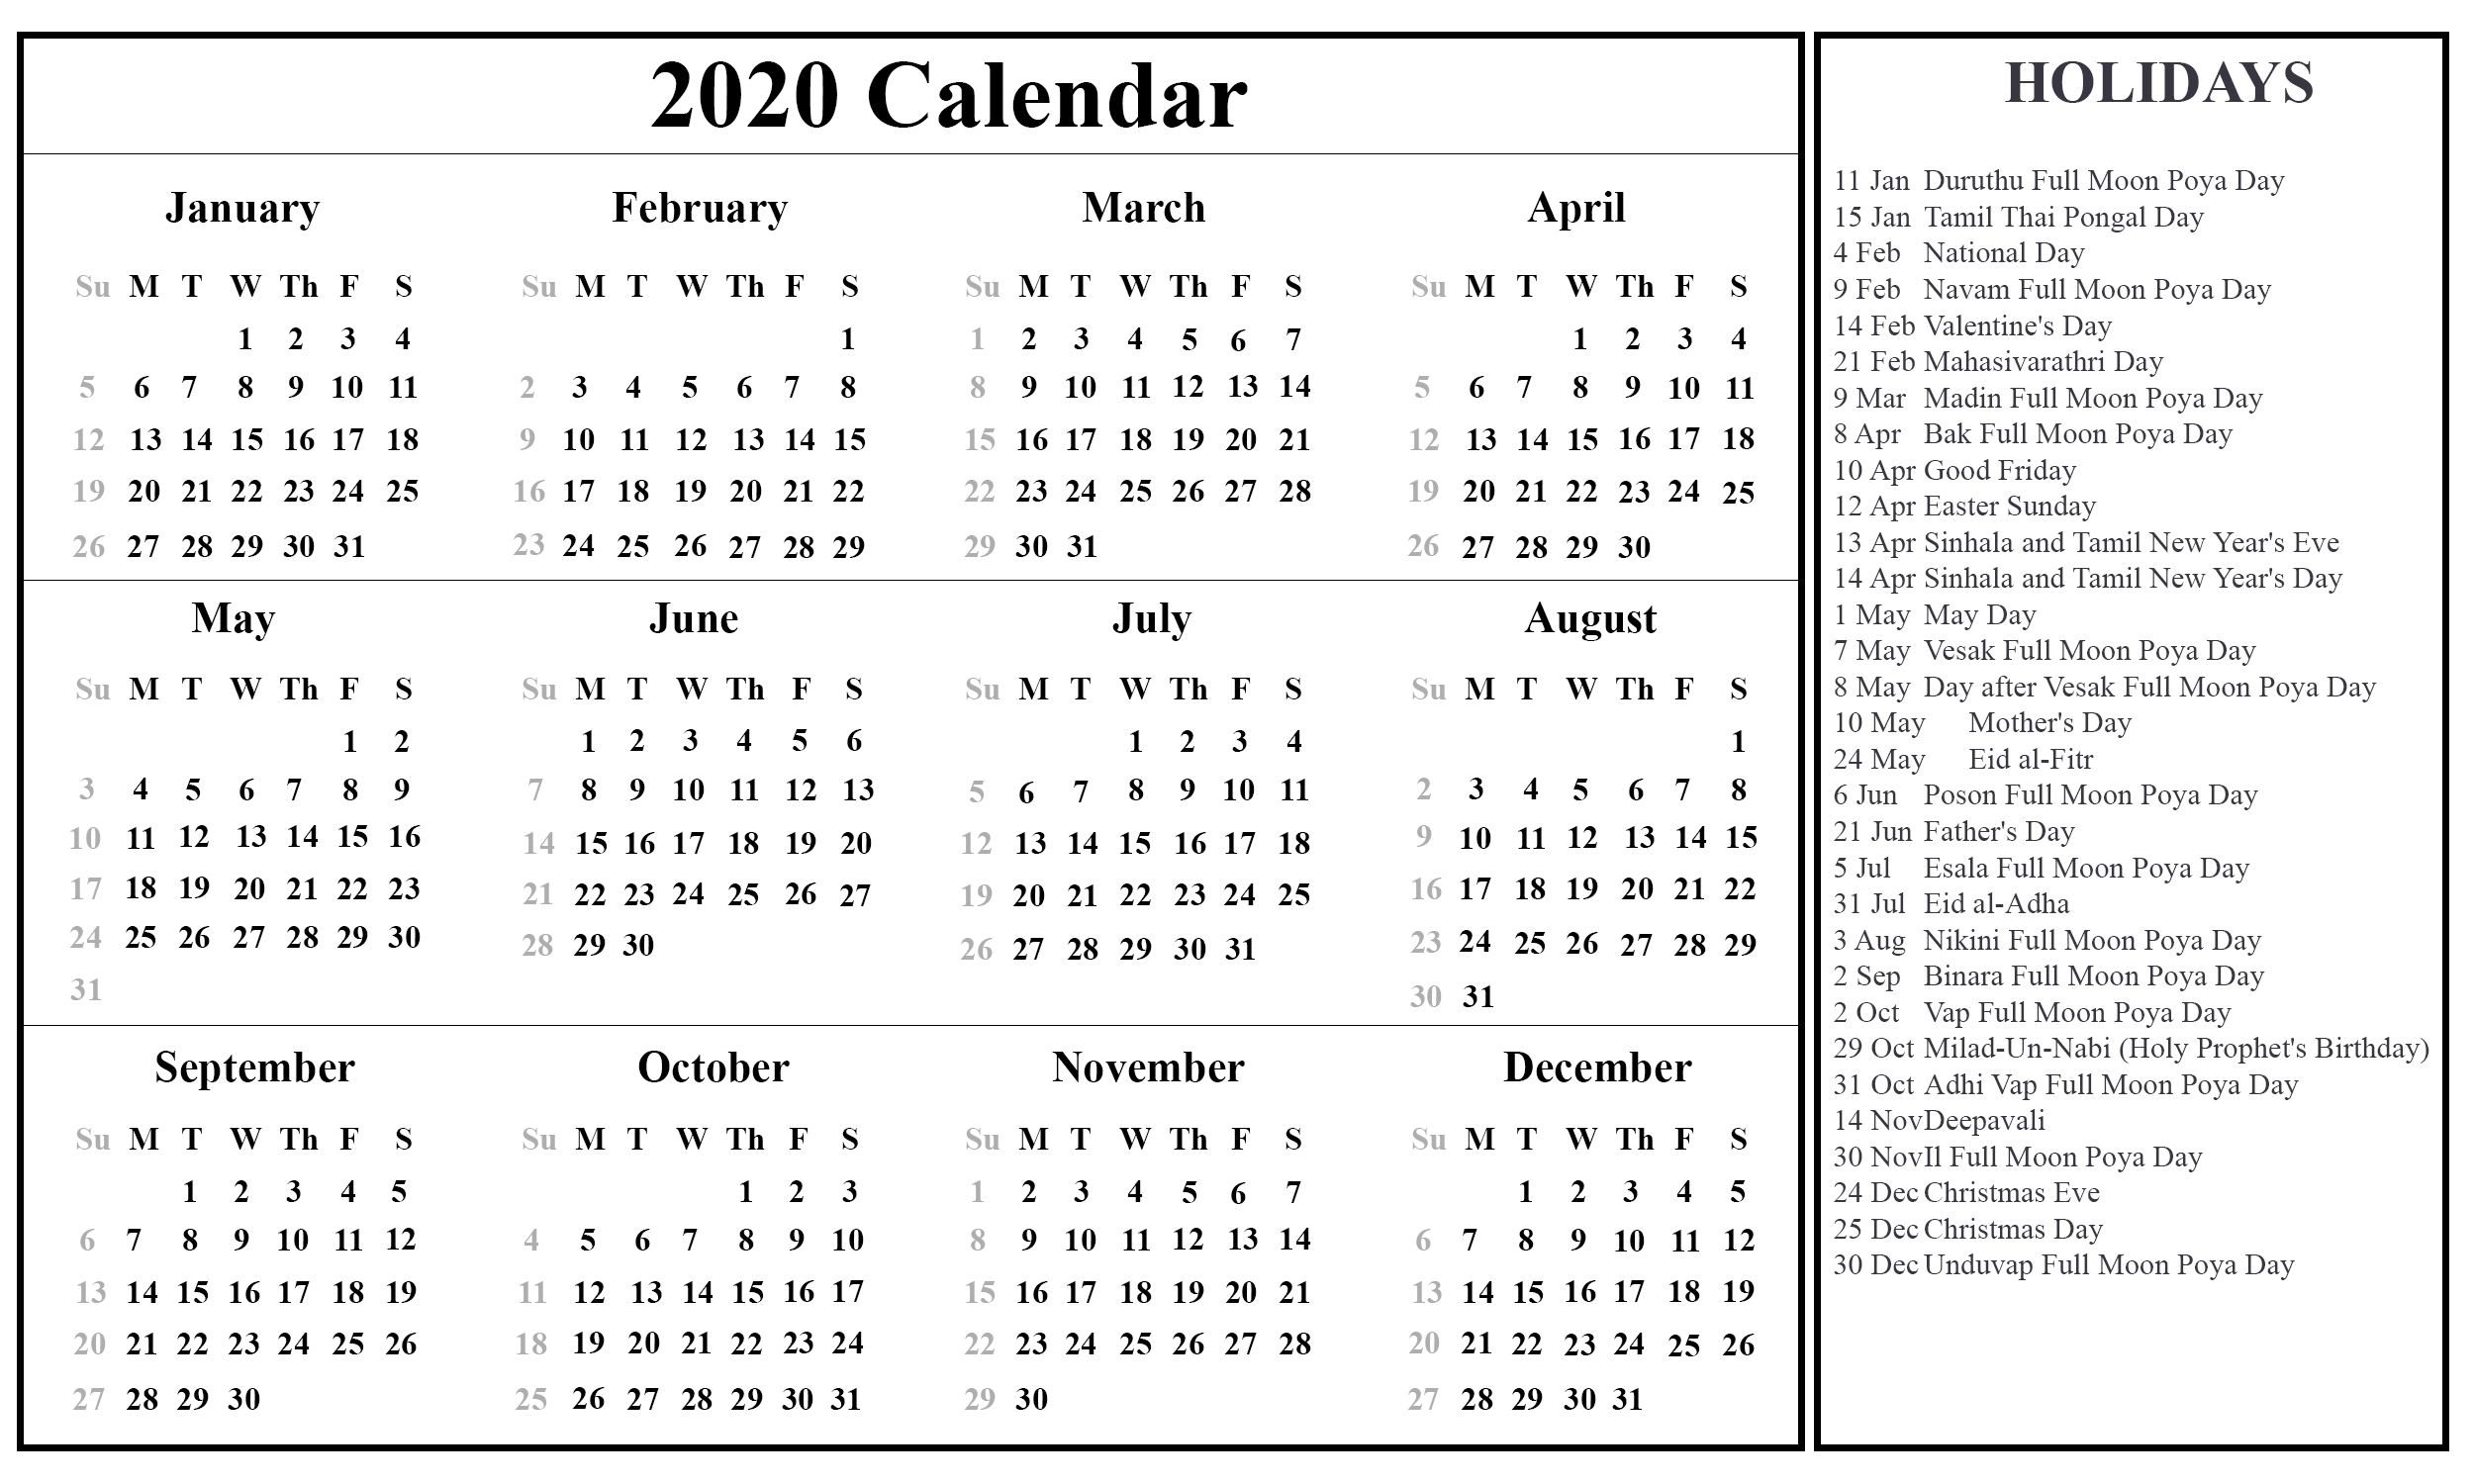 Free Printable Sri Lanka Calendar 2020 With Holidays In Pdf-January 2020 Calendar With Holidays Sri Lanka